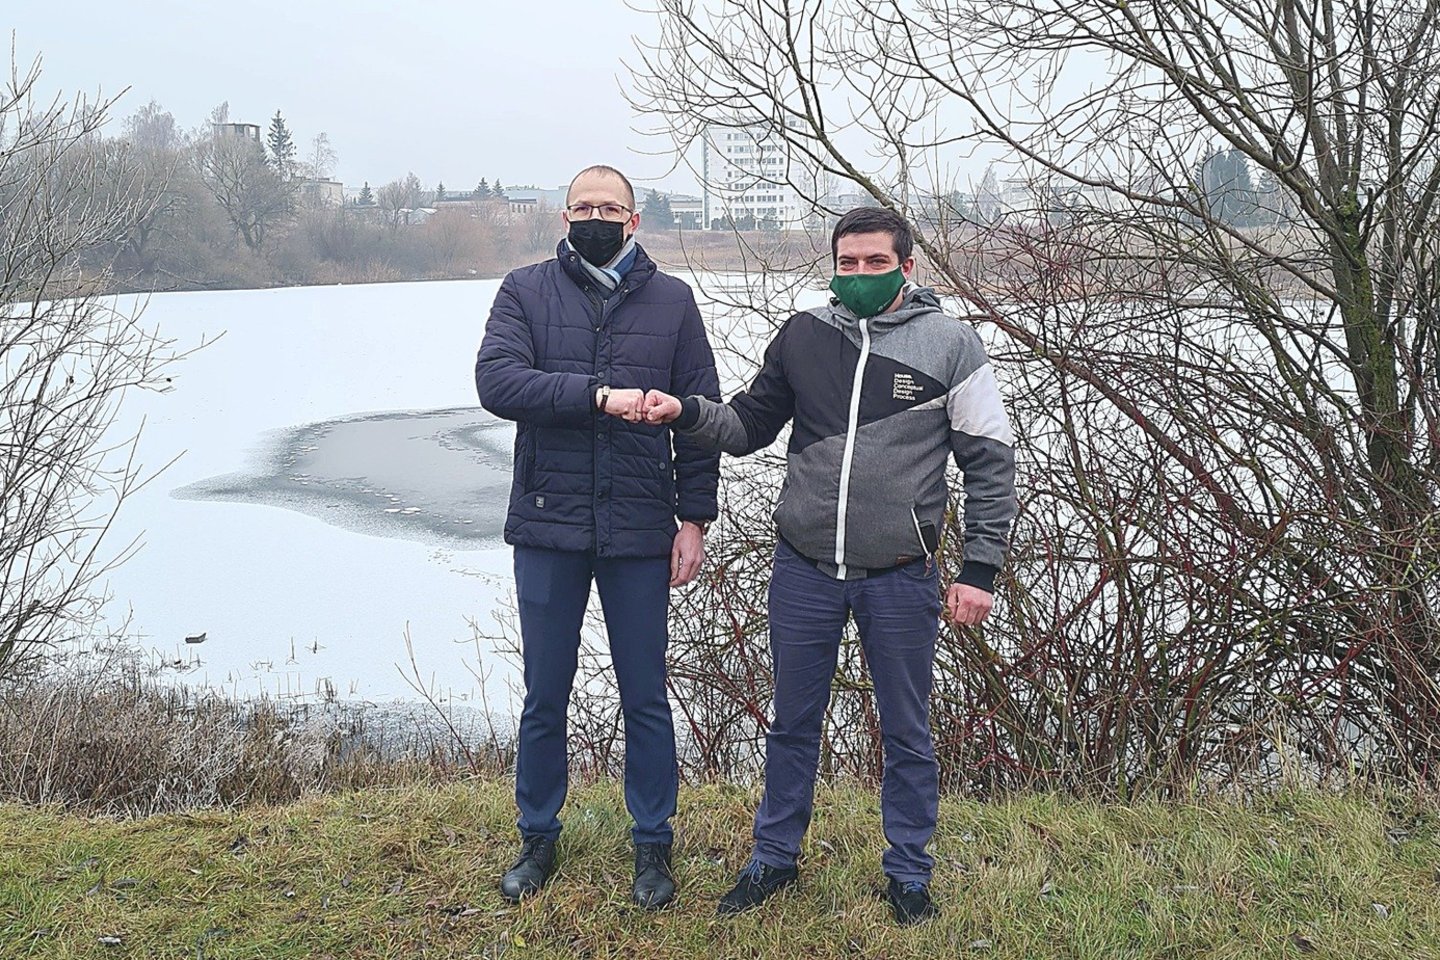 Alytiškiai N.Stanevičius (kairėje) ir V.Buinauskas dėkojo likimui, kad nelaimės vietoje atsidūrė tinkamu metu.<br>R.Buinauskienės nuotr.